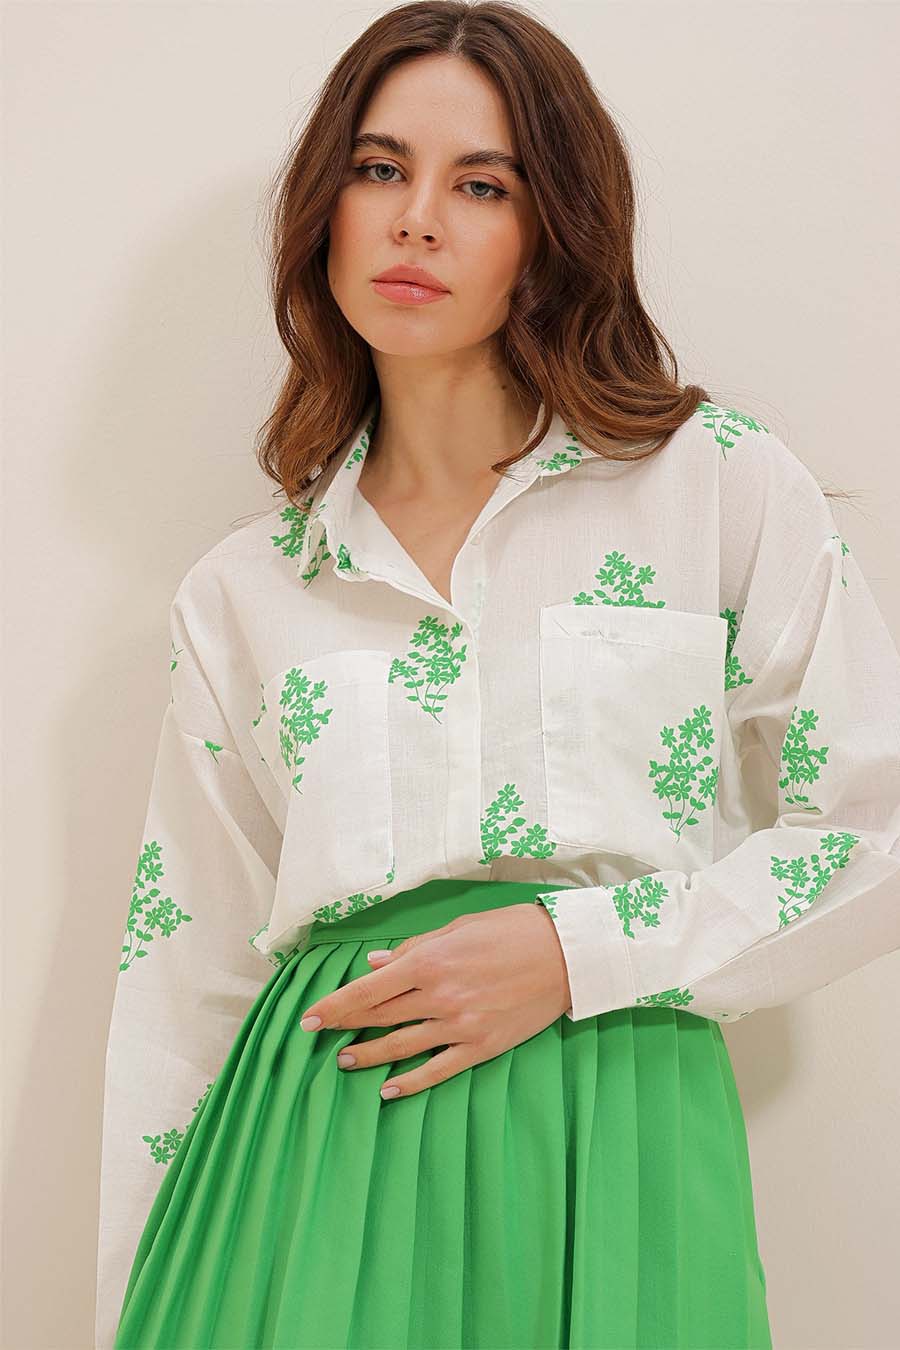 Дамска риза Darana, Бял/Зелен 3